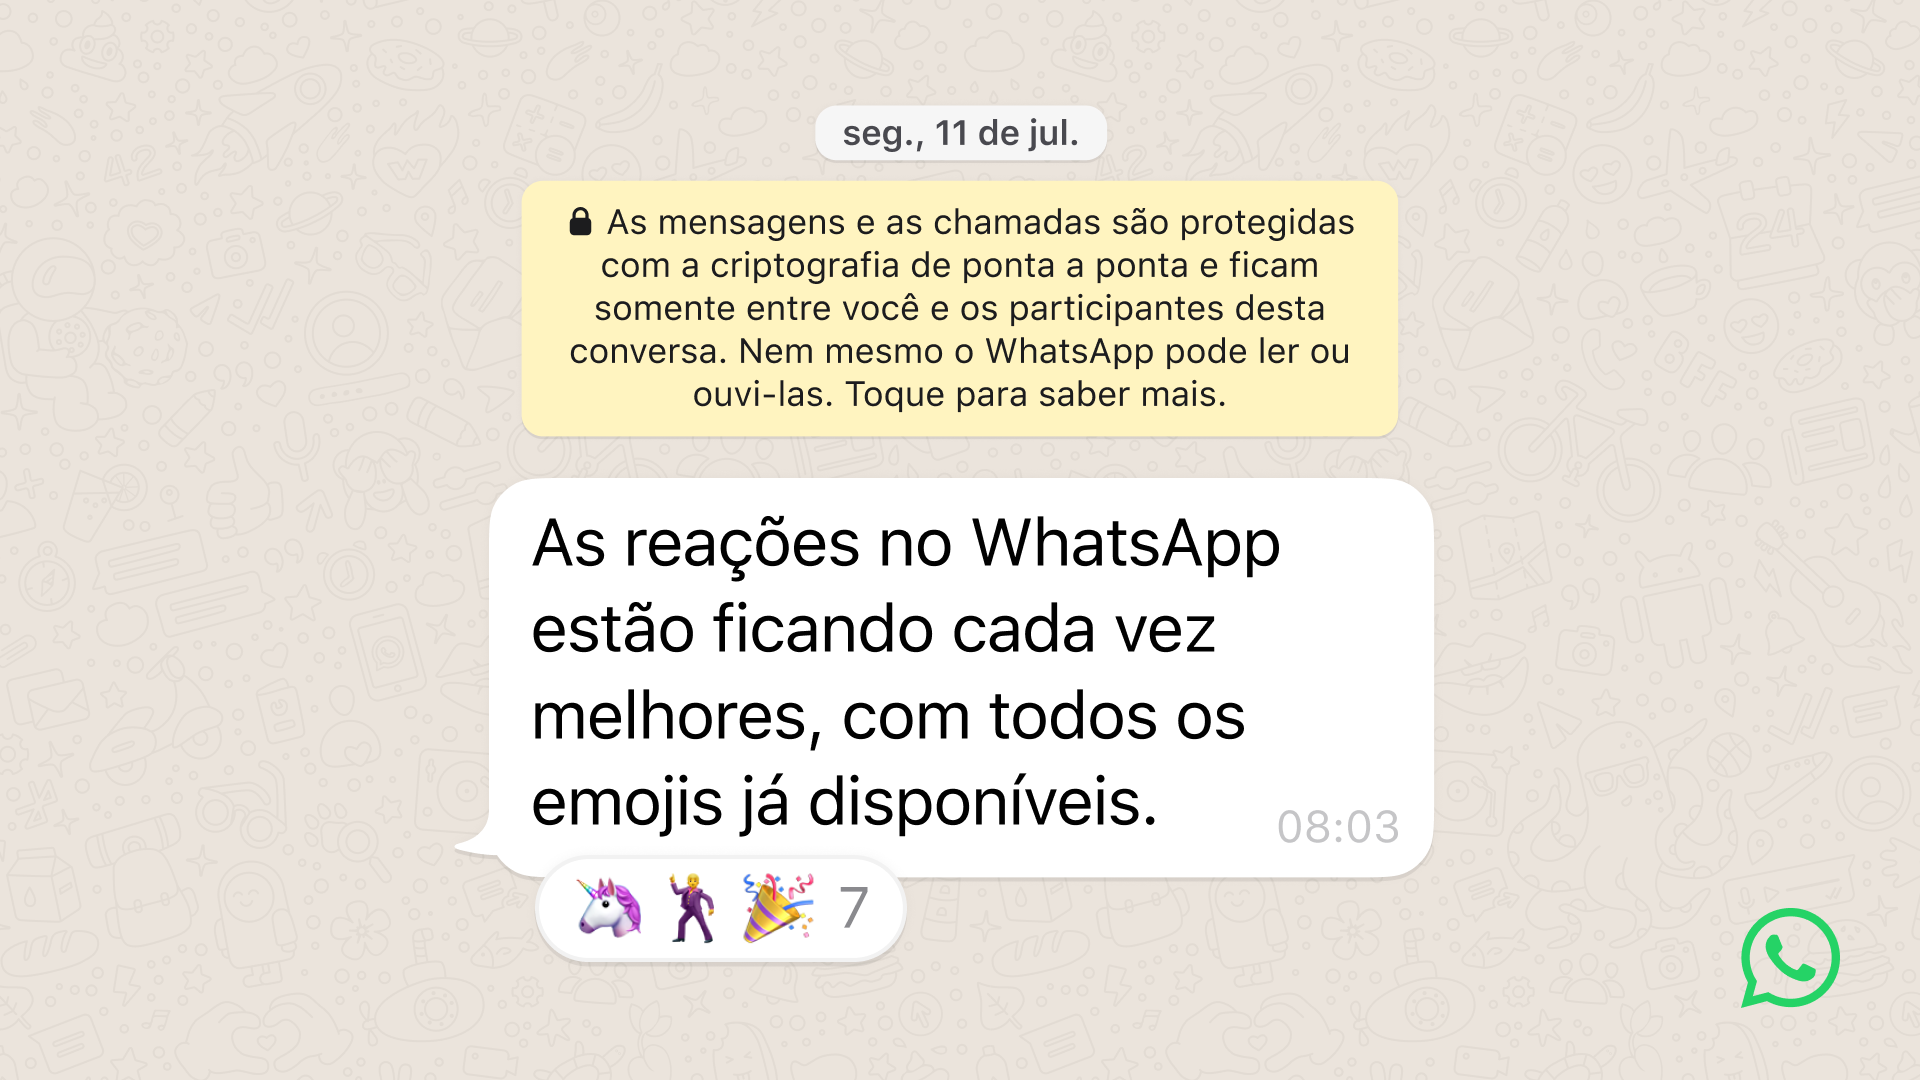 Os emojis de coração do WhatsApp não são exatamente o que você pensa